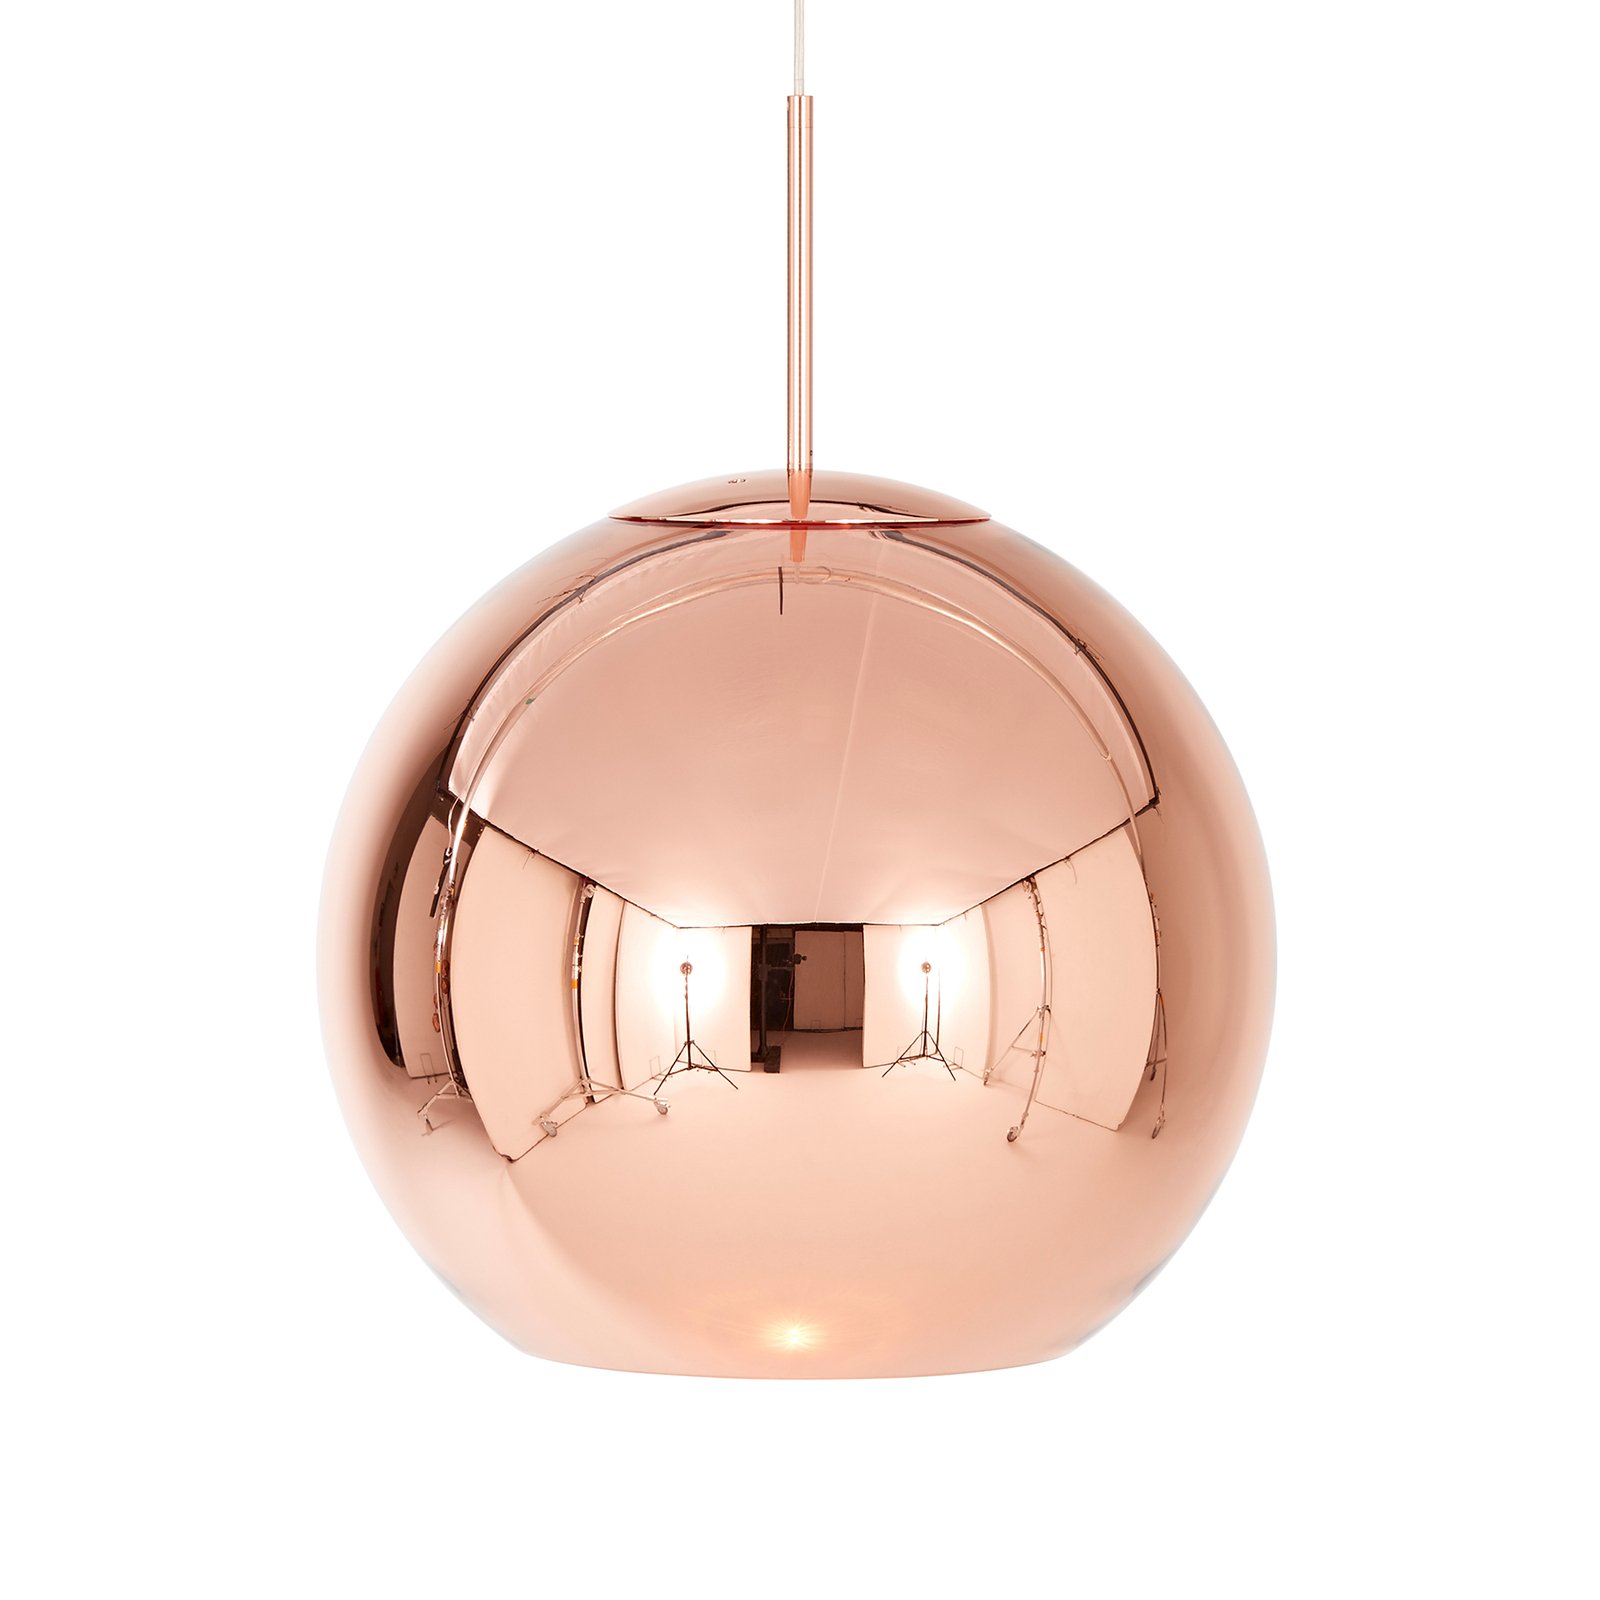 Tom Dixon Copper Round hanging light Ø 45 cm copper